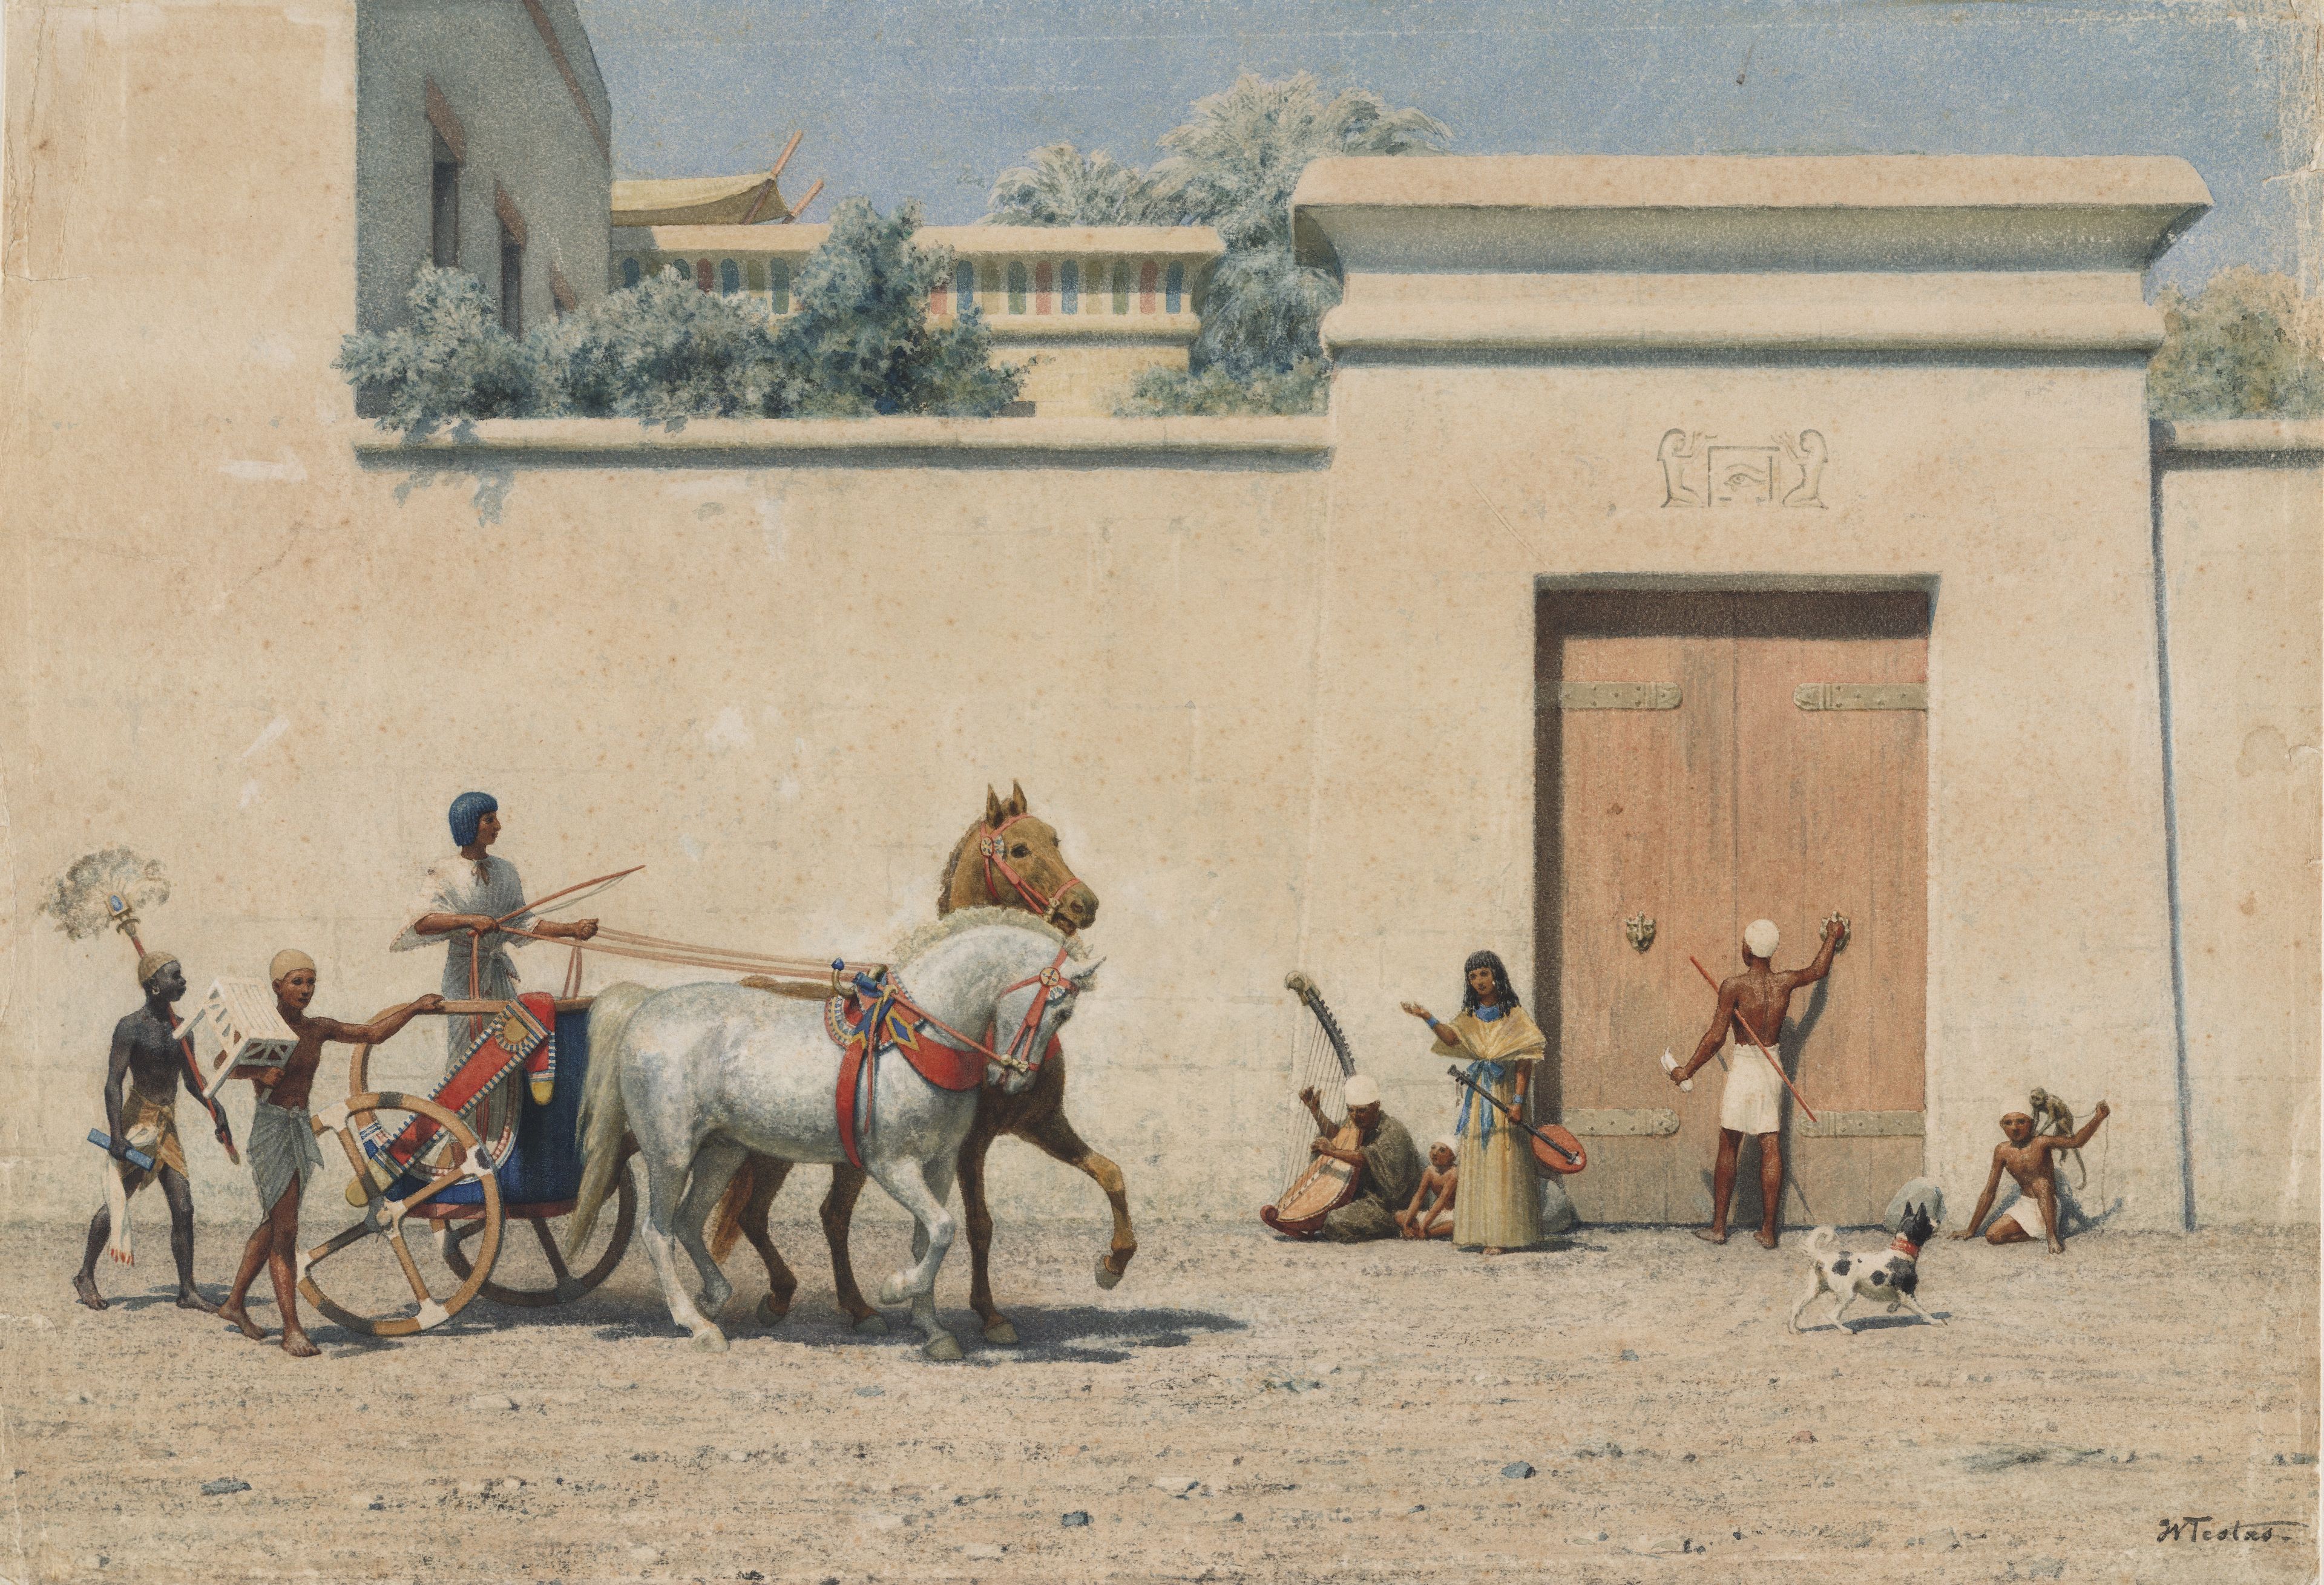 Willem de Famars Testas, 'Een hoogwaardigheidsbekleder uit het Oude Egypte op weg om een bezoek af te leggen', 1860-1872.